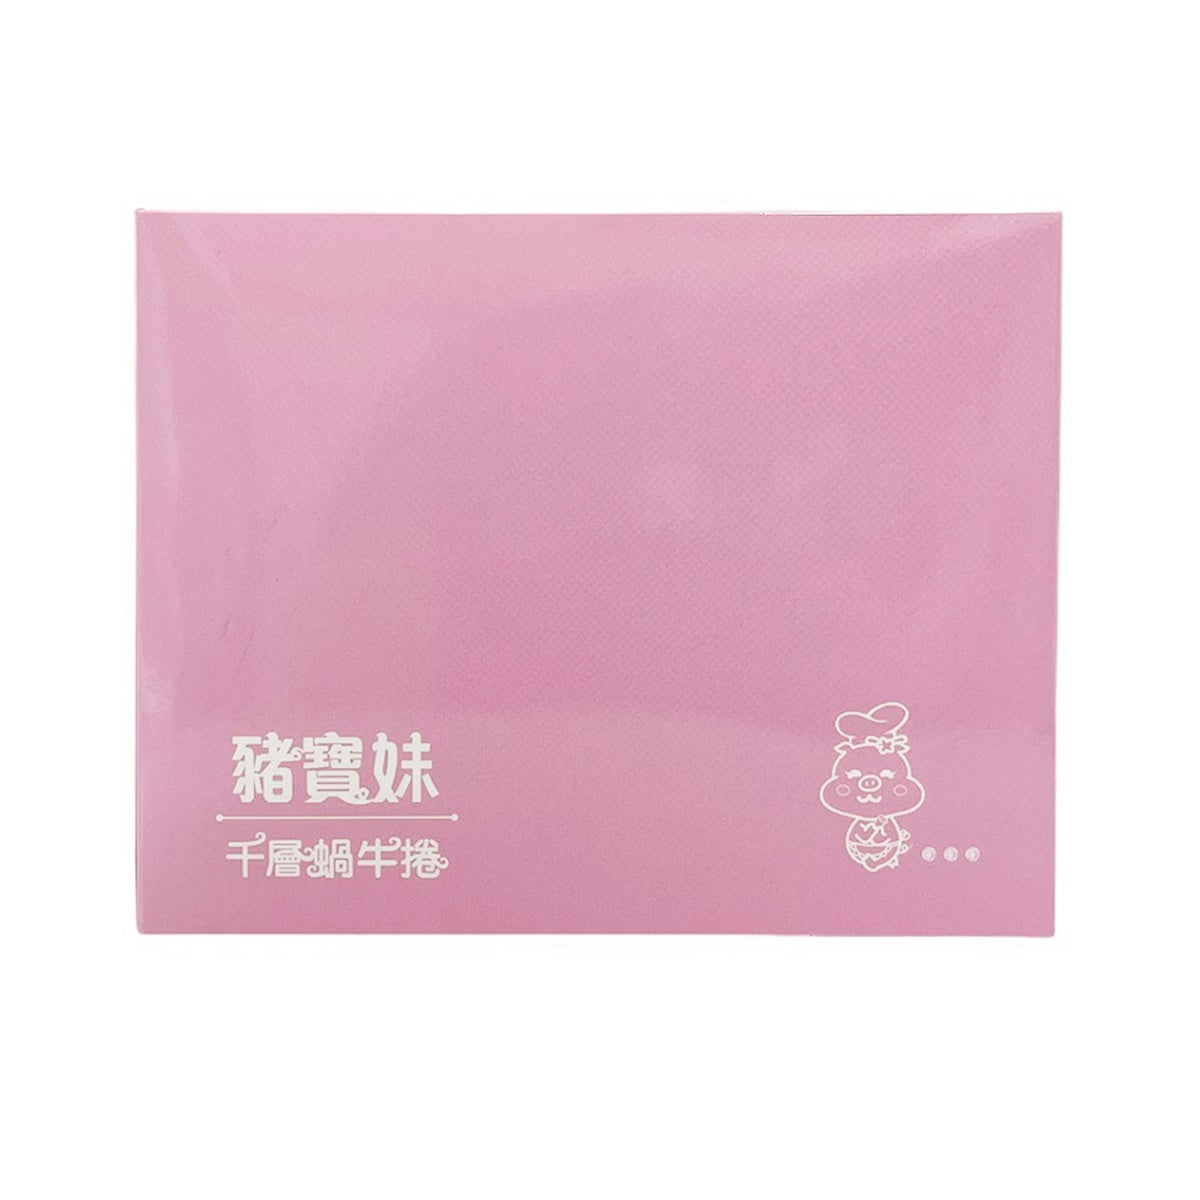 豬寶妹 PIG LADY 蝸牛捲-綜合四口味 (原味.芝麻.伯爵紅茶.紫芋地瓜) 384g